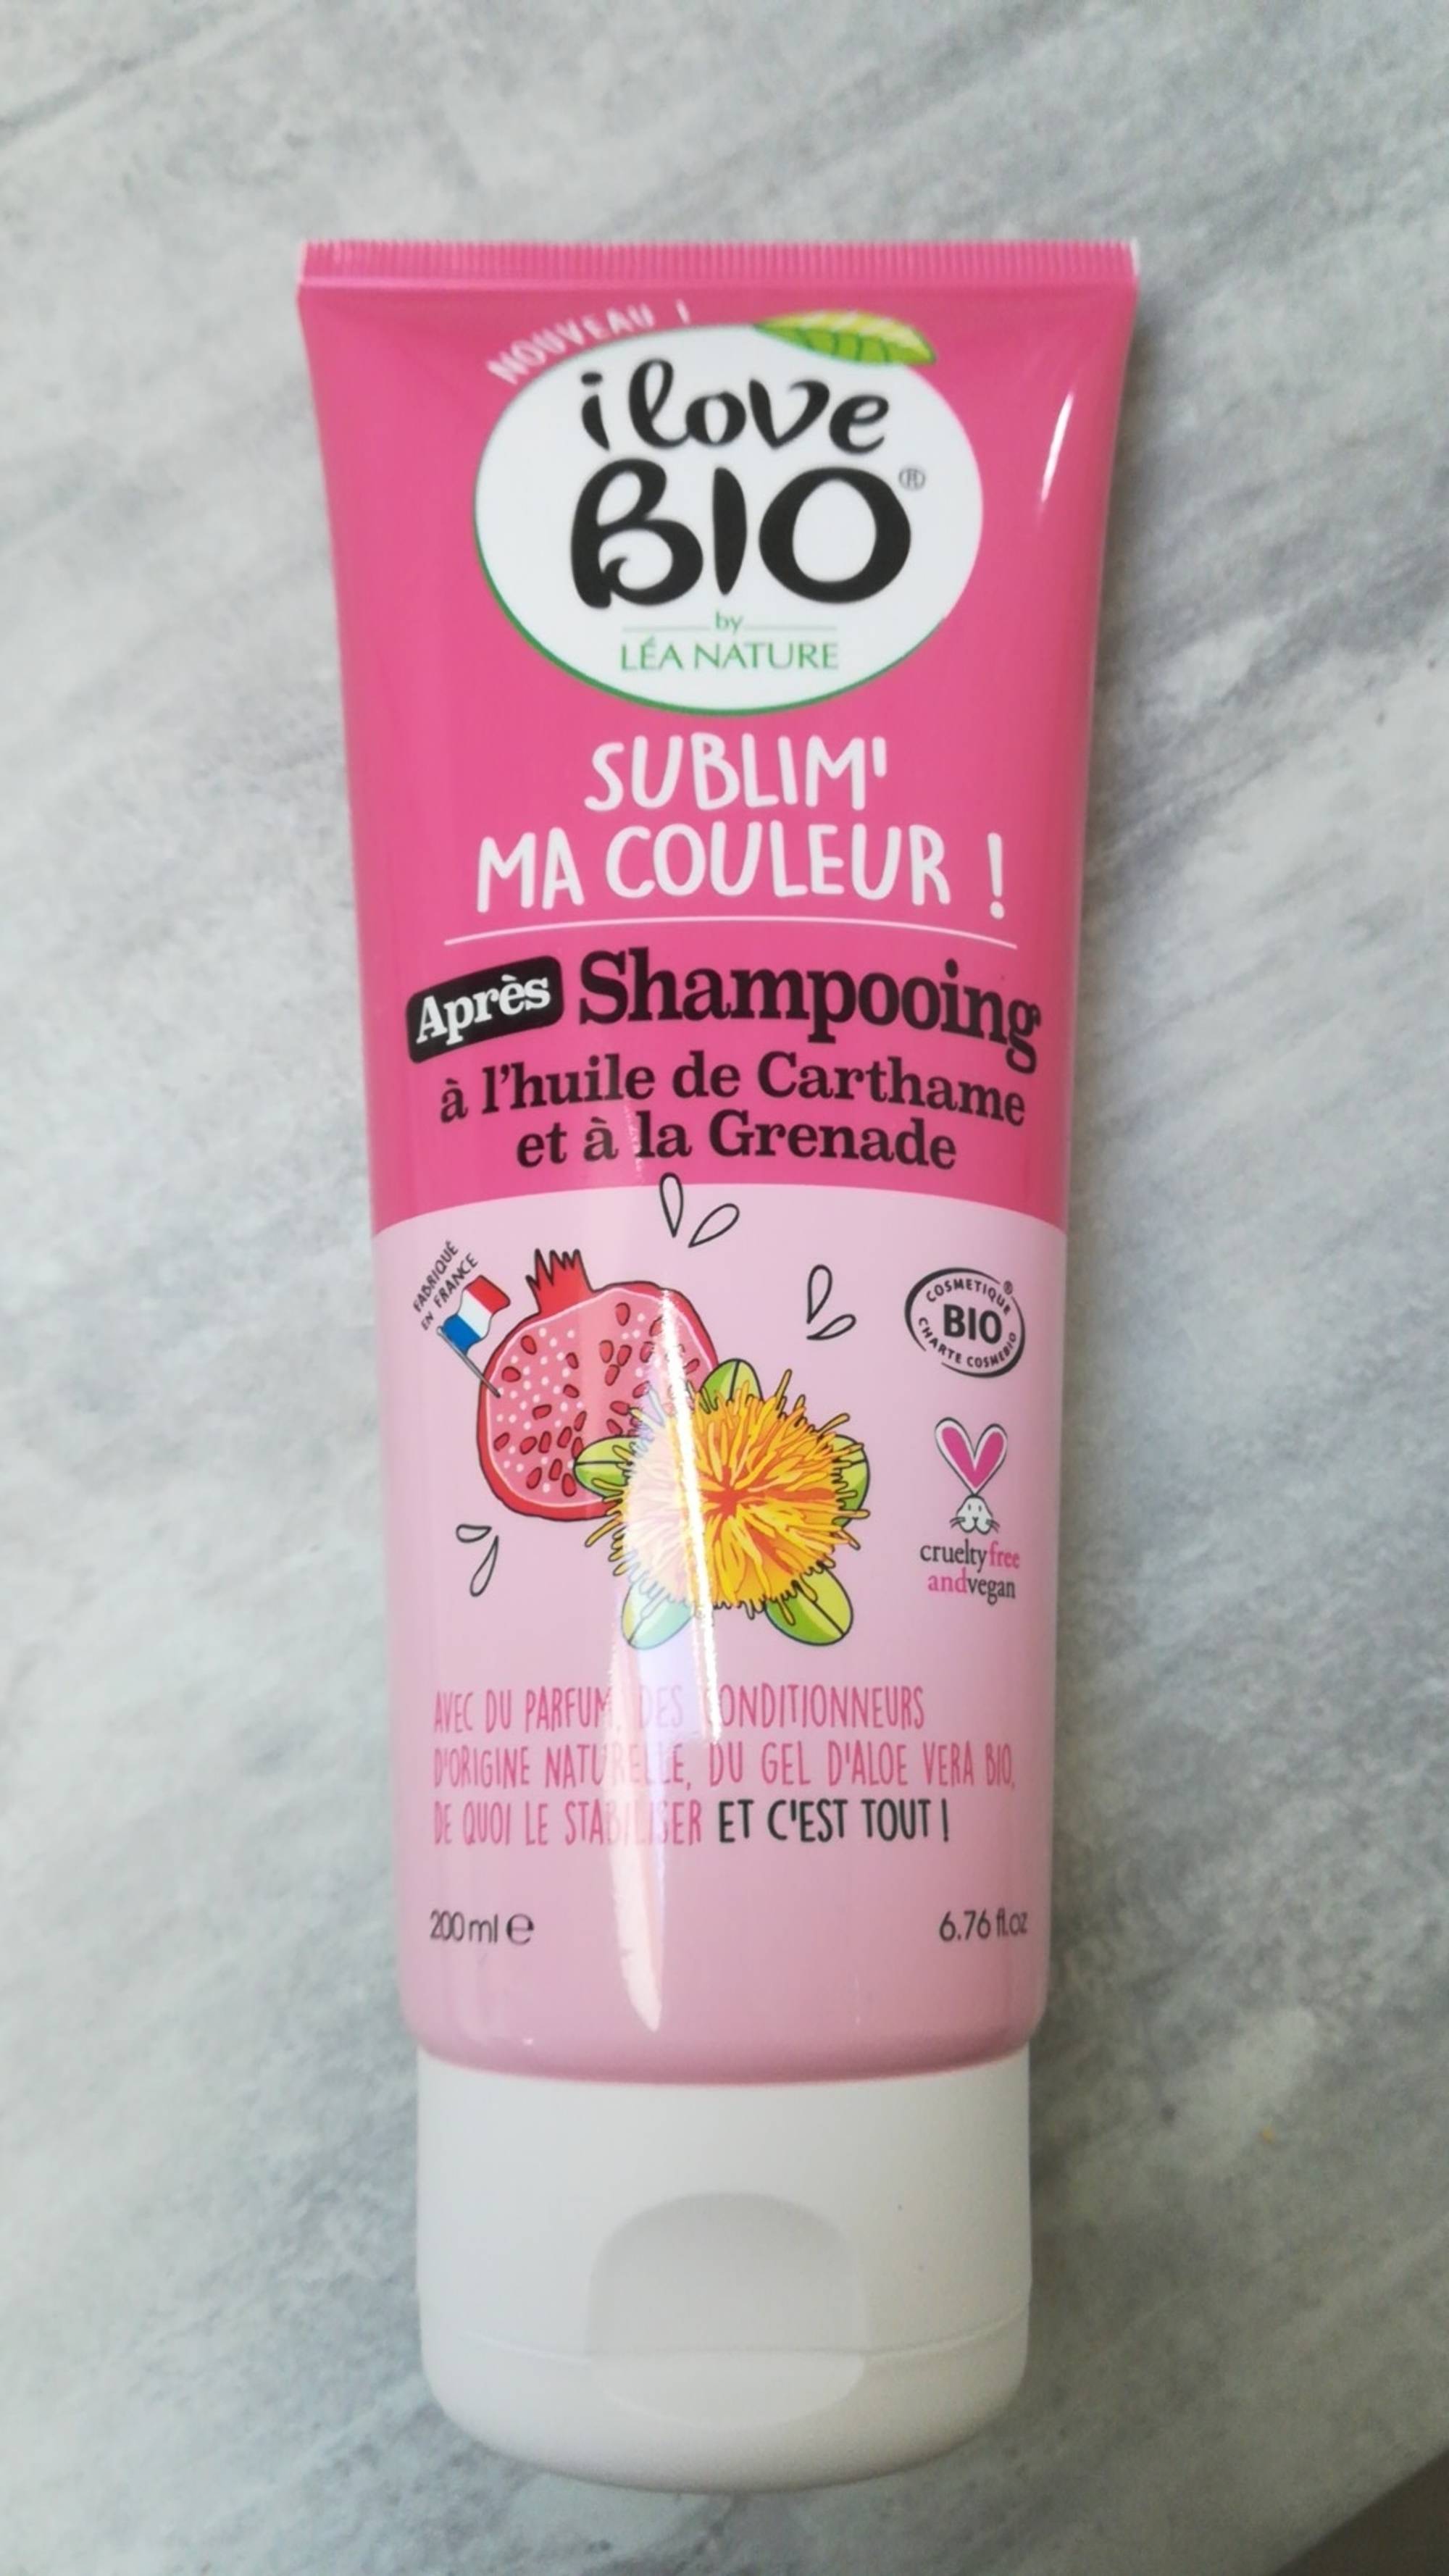 I LOVE BIO - Sublim' ma couleur - Après shampooing 